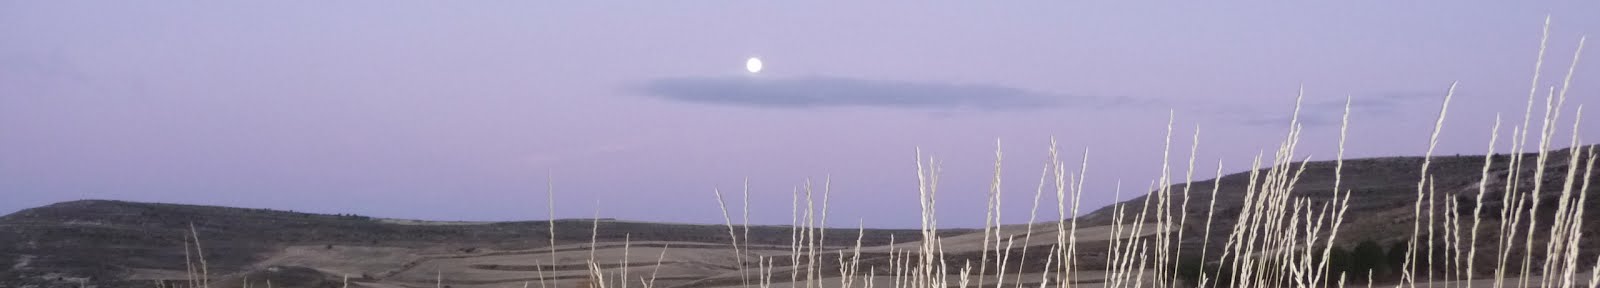 Moonset on the Meseta